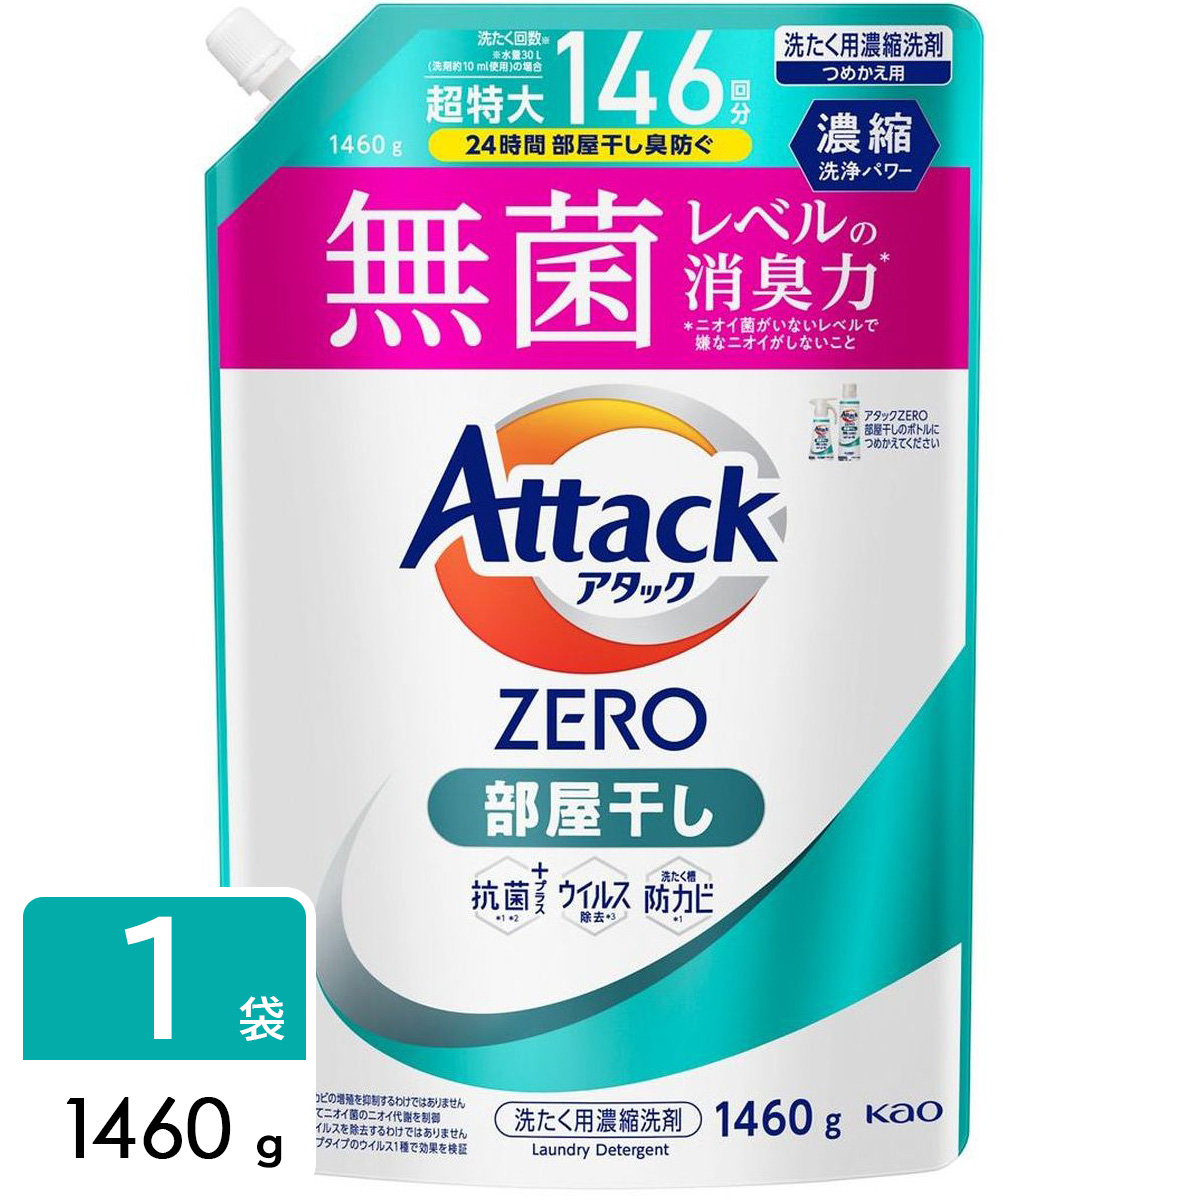 アタックZERO Attack ZERO 洗濯洗剤 部屋干し 詰め替え用 1460g